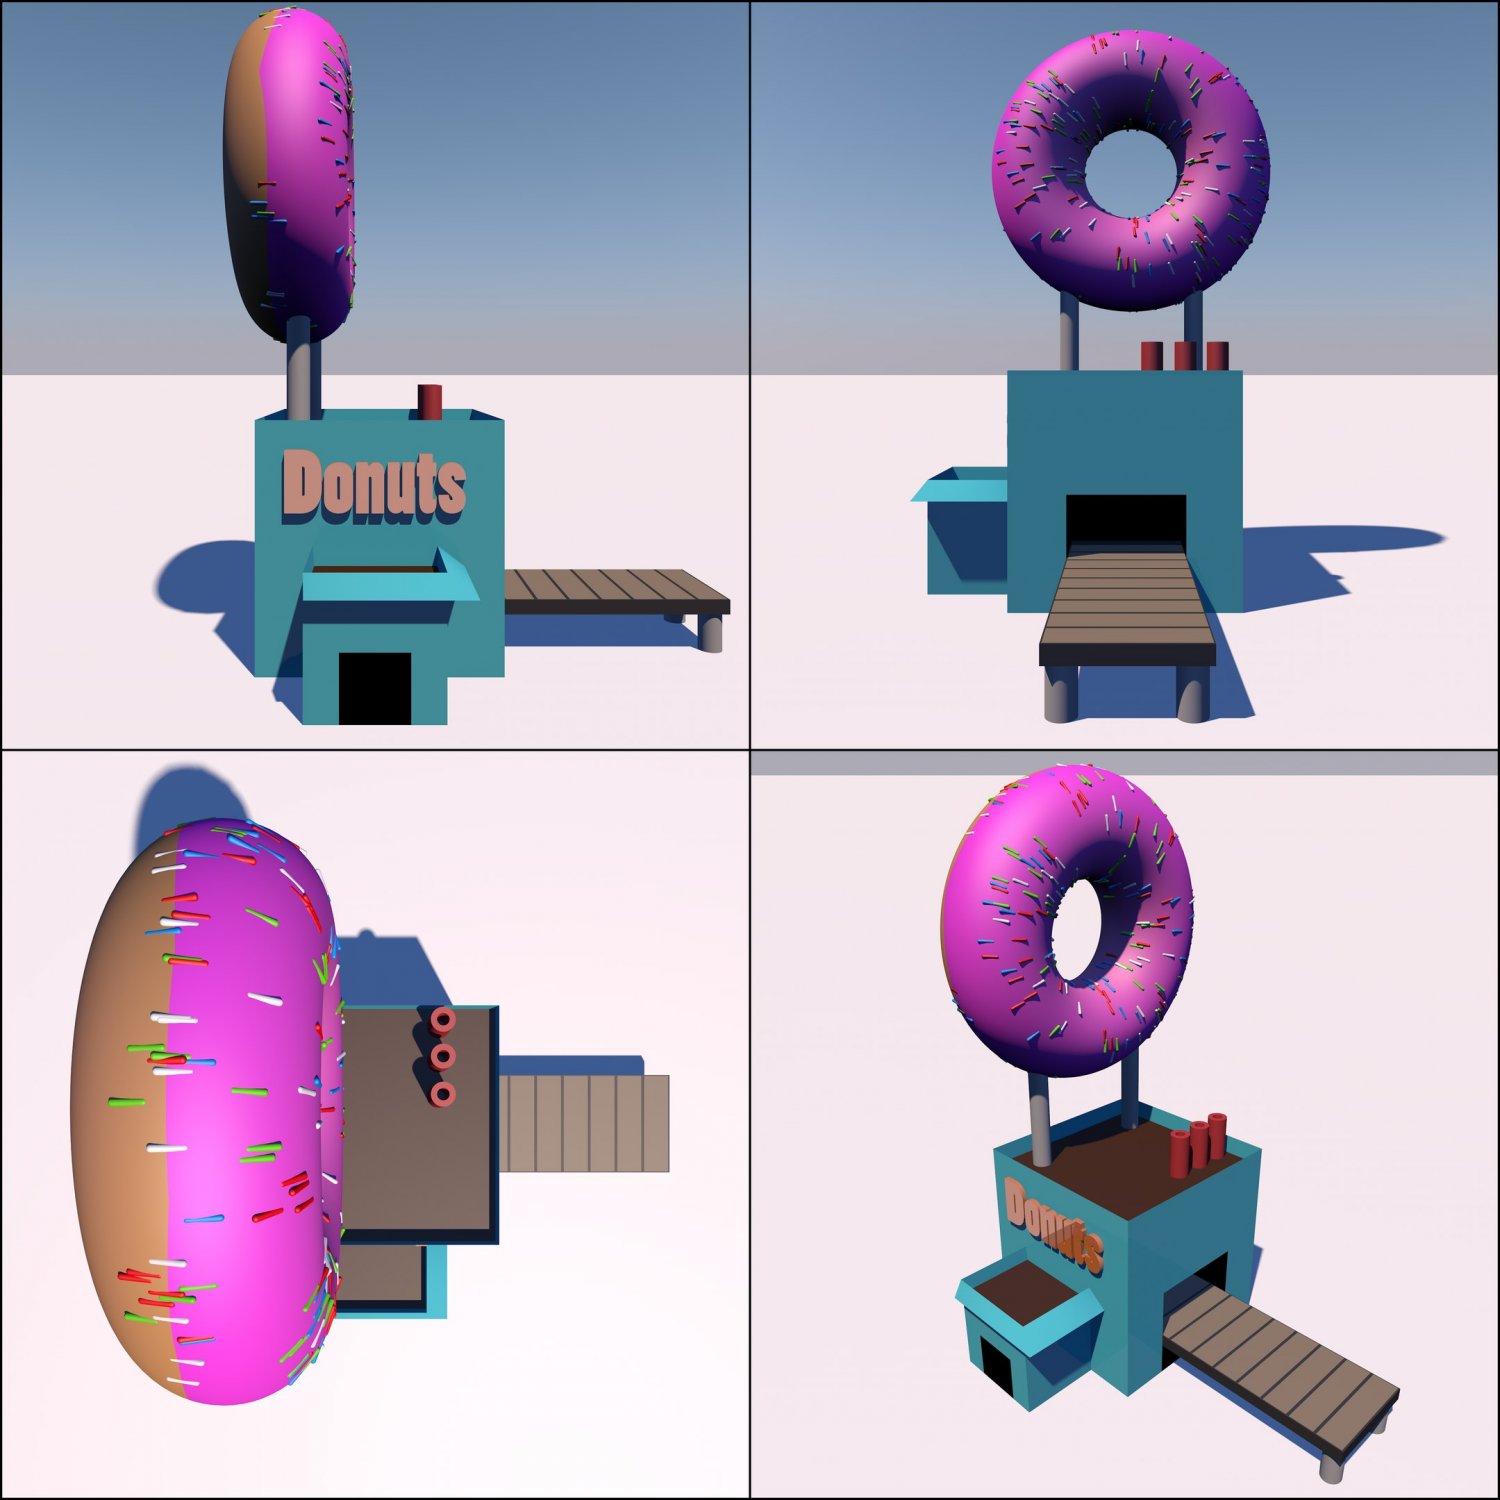 Donut 3D model